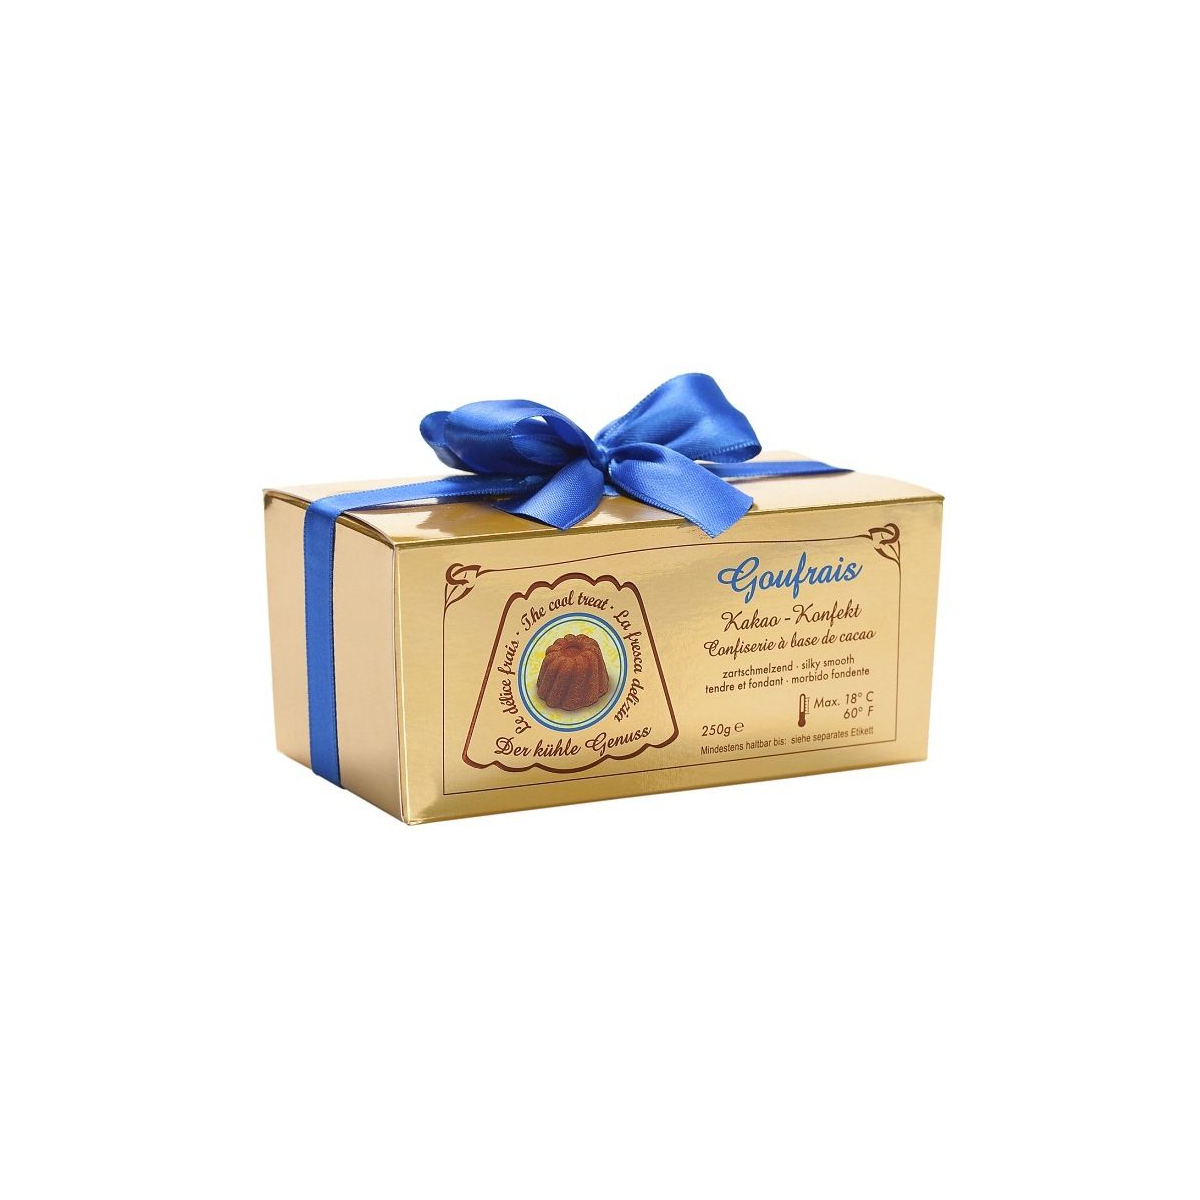 Goufrais Kakao Konfekt Schokolade in 250g Geschenkverpackung